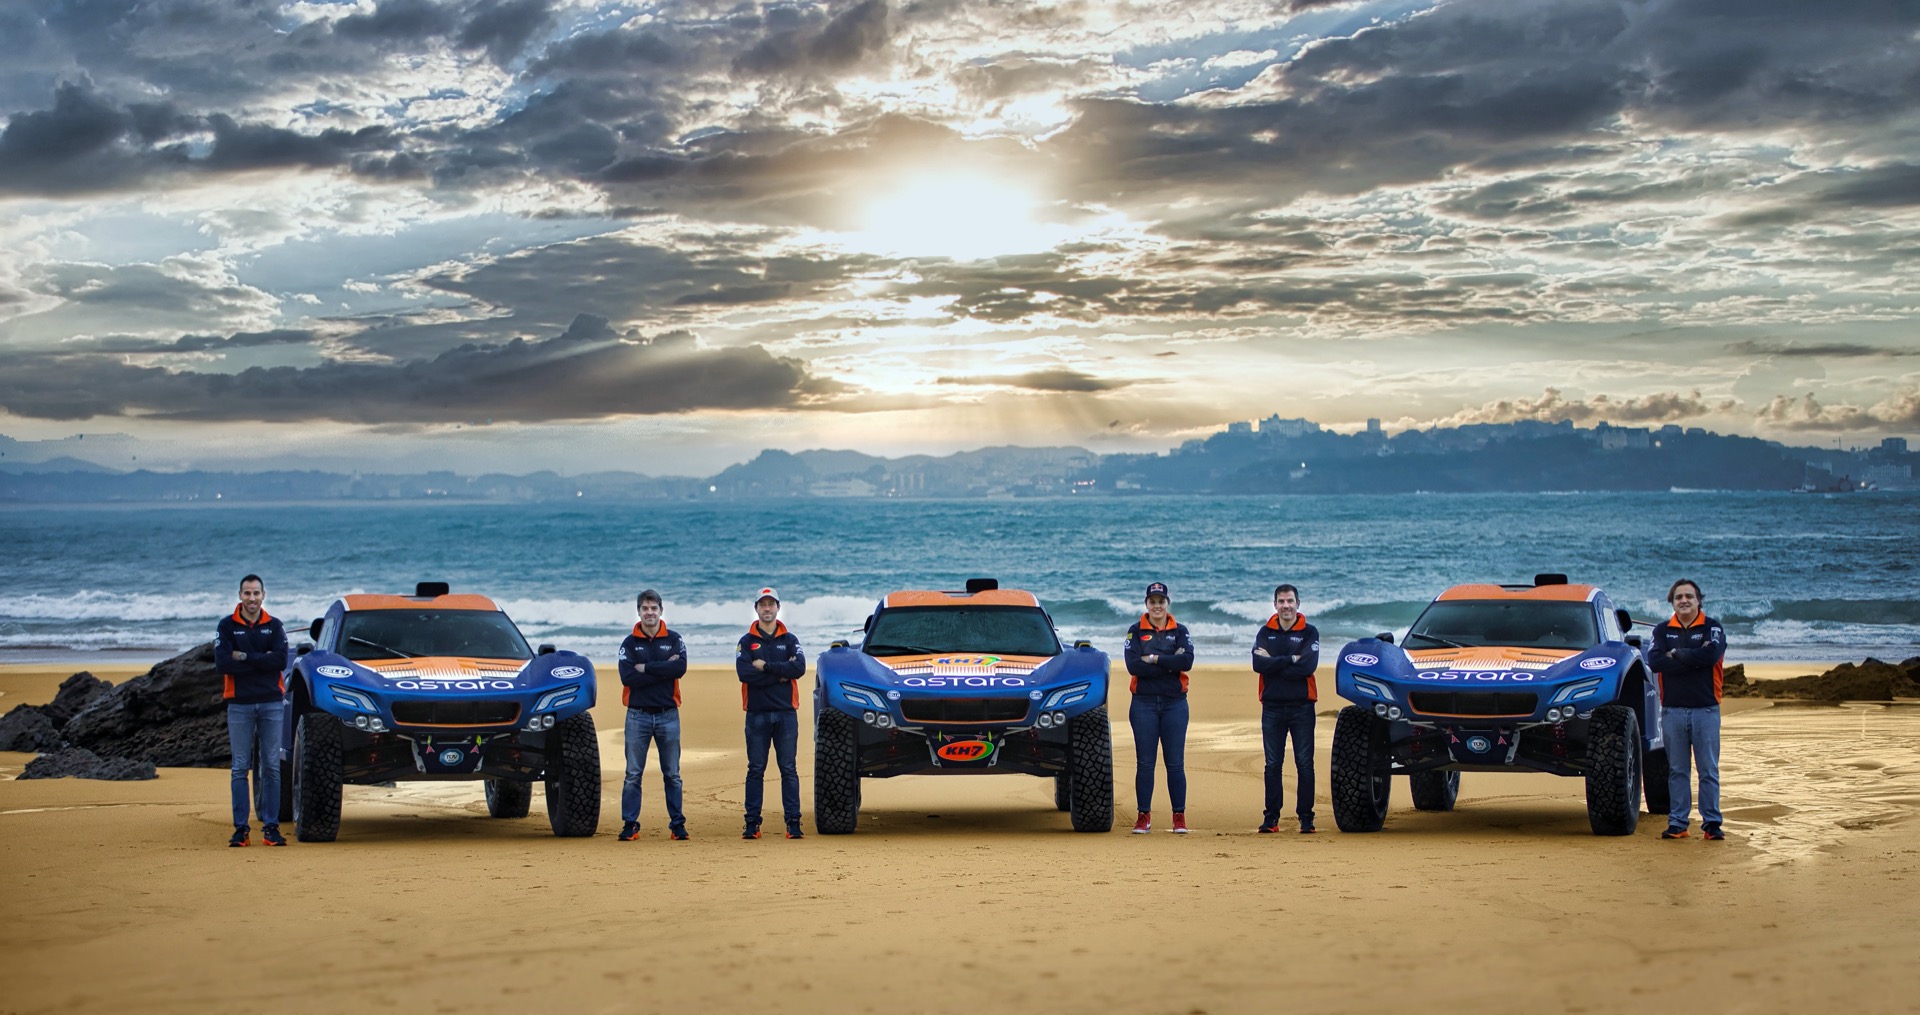 Astara Team Dakar 9